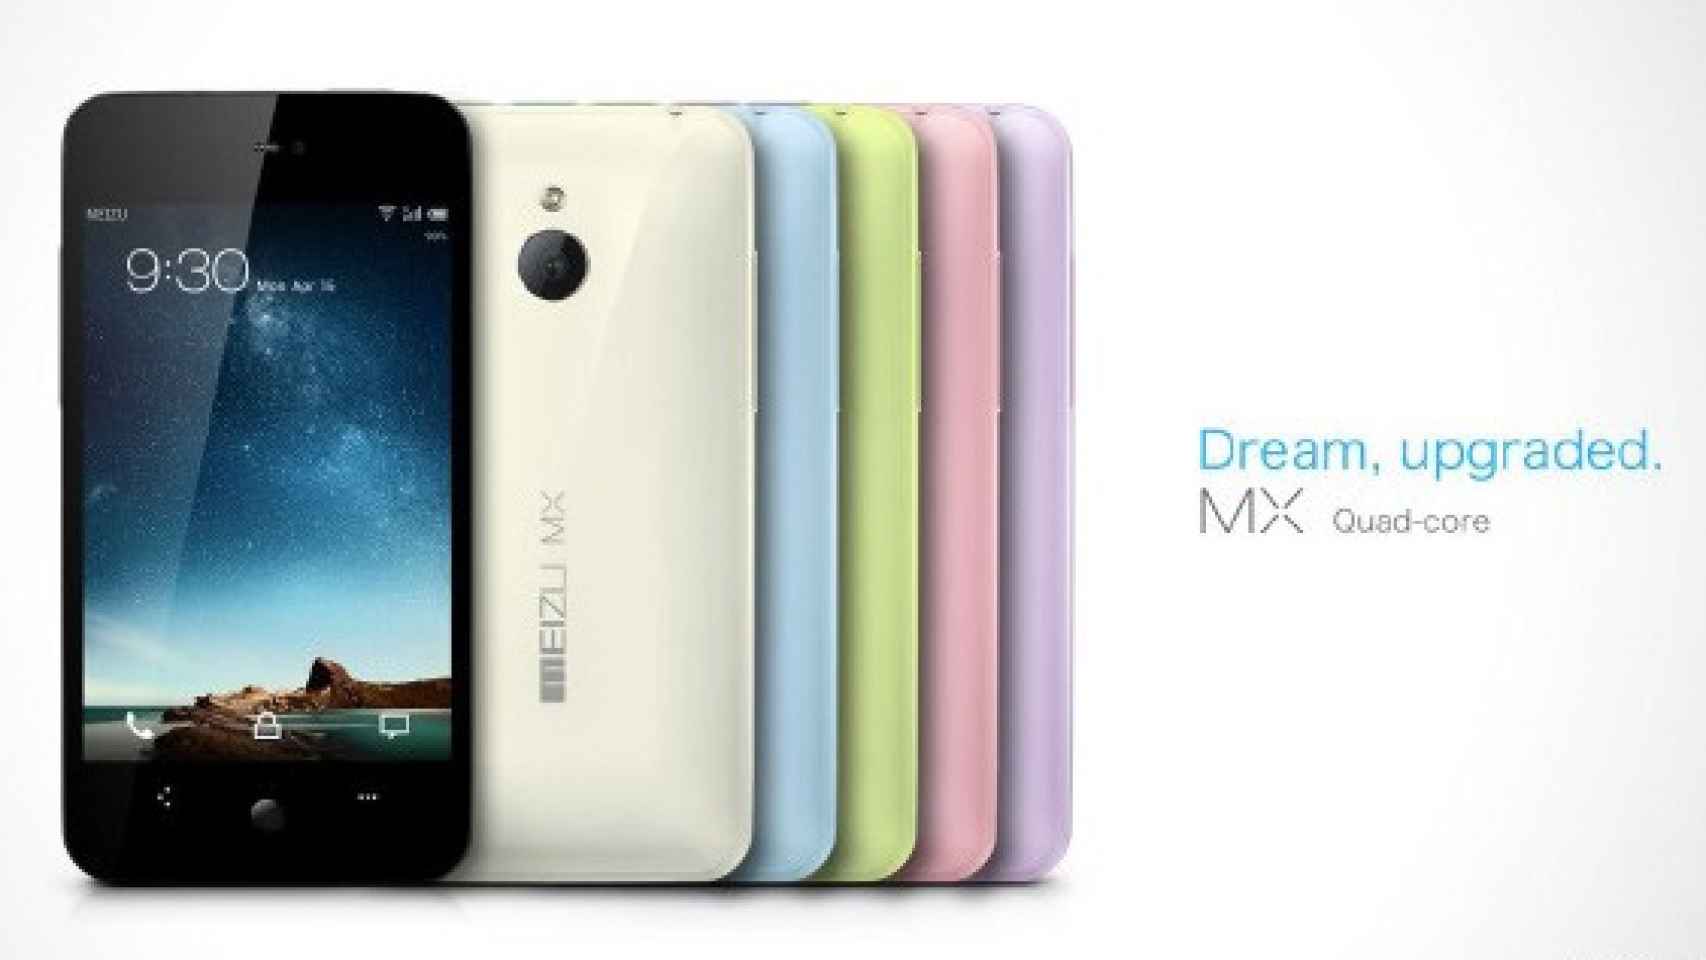 Nuevo Meizu MX Quadcore en múltiples colores con sabor Android 4.0